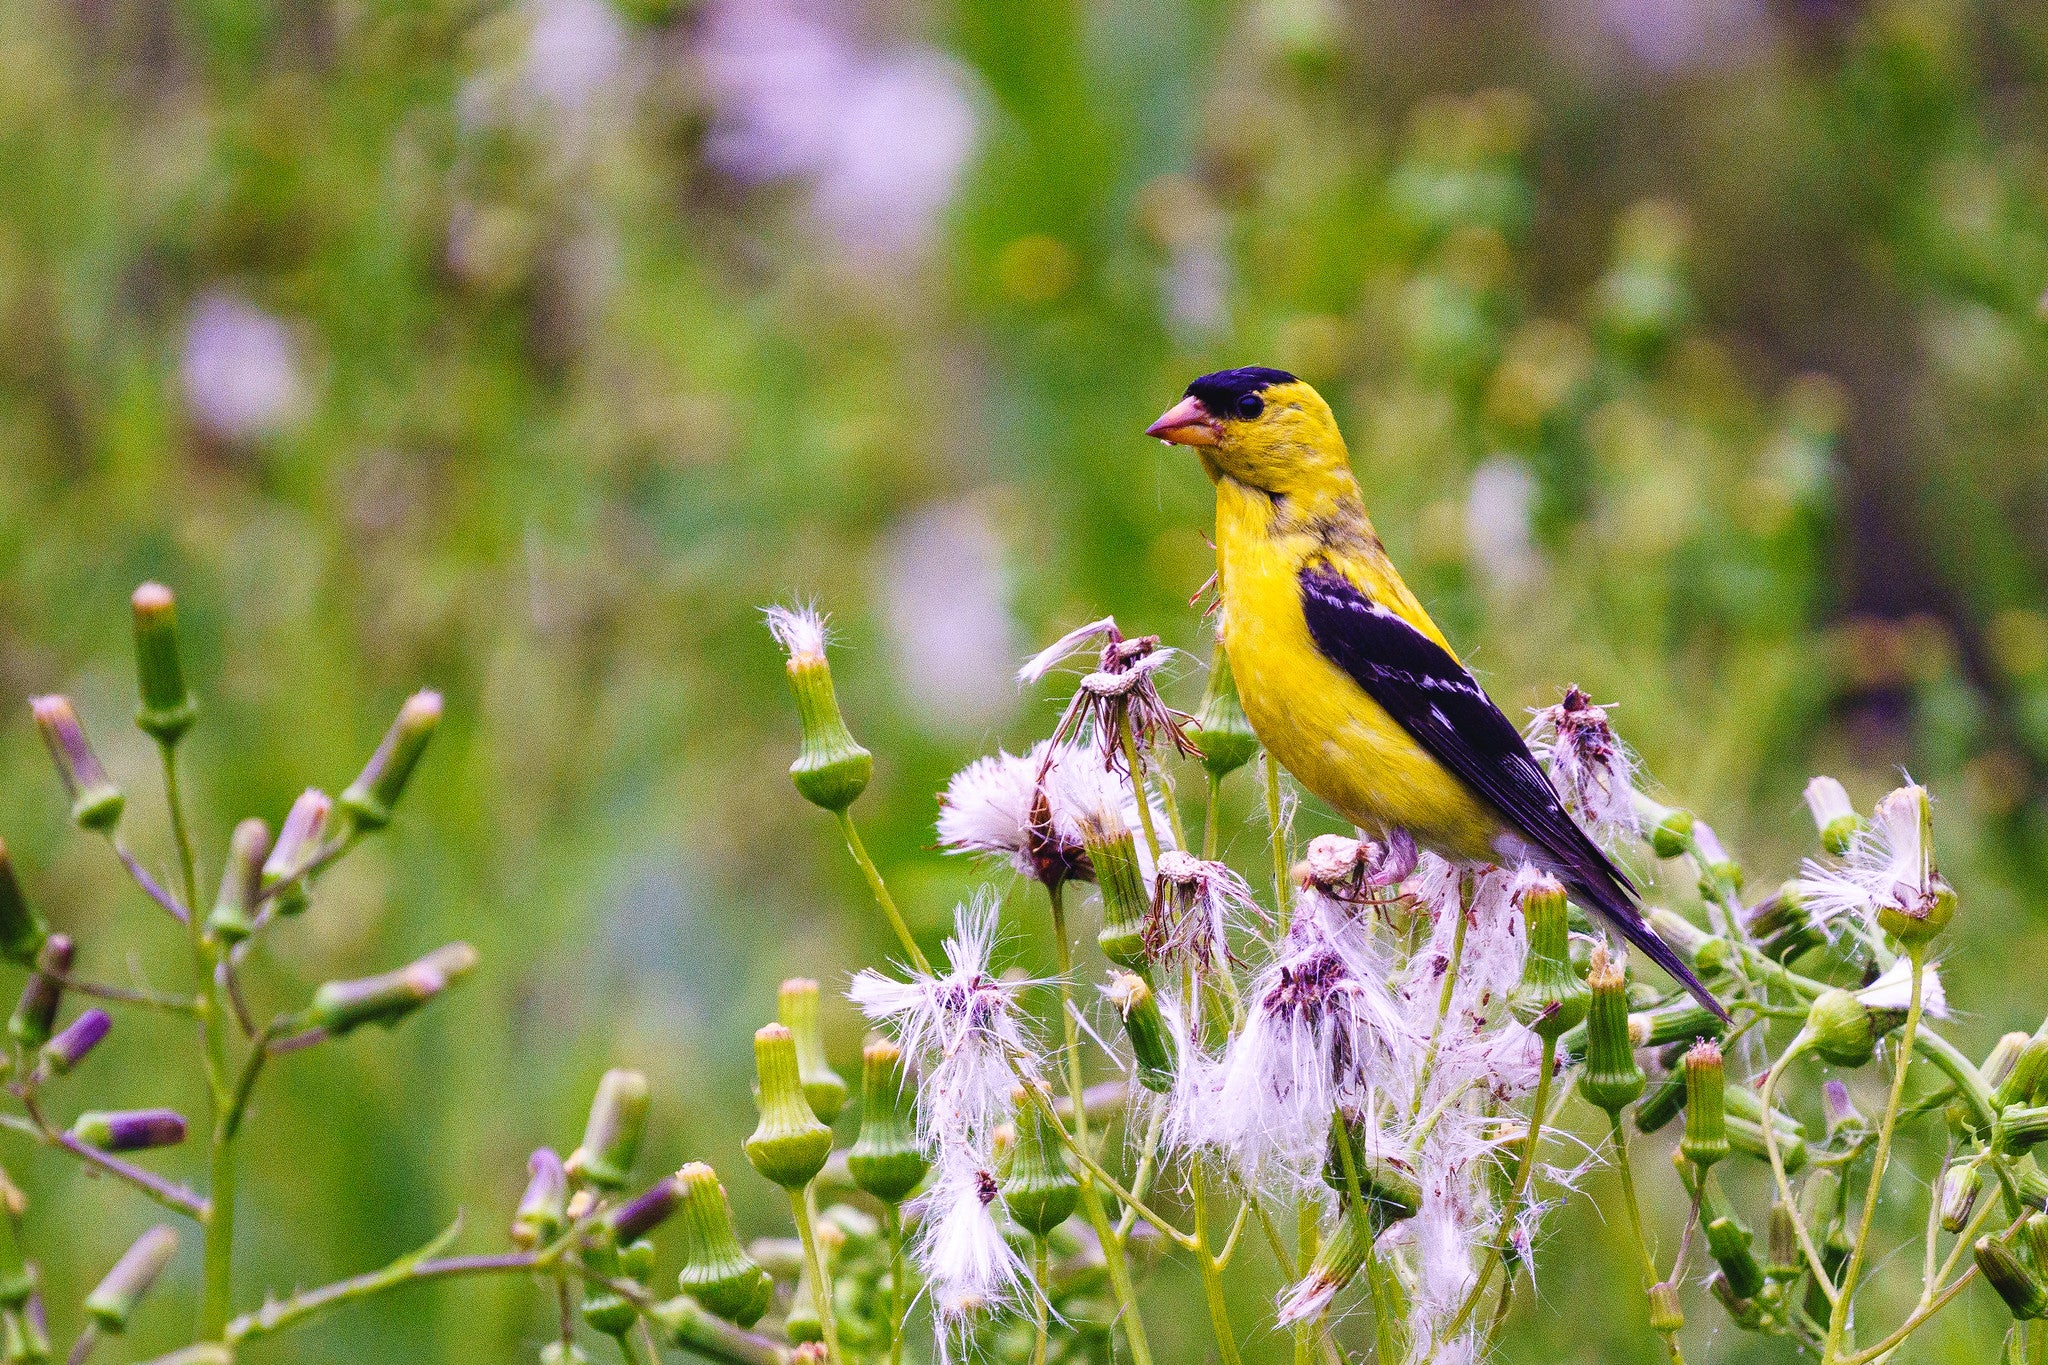 yellow bird photograph by pamina ewing